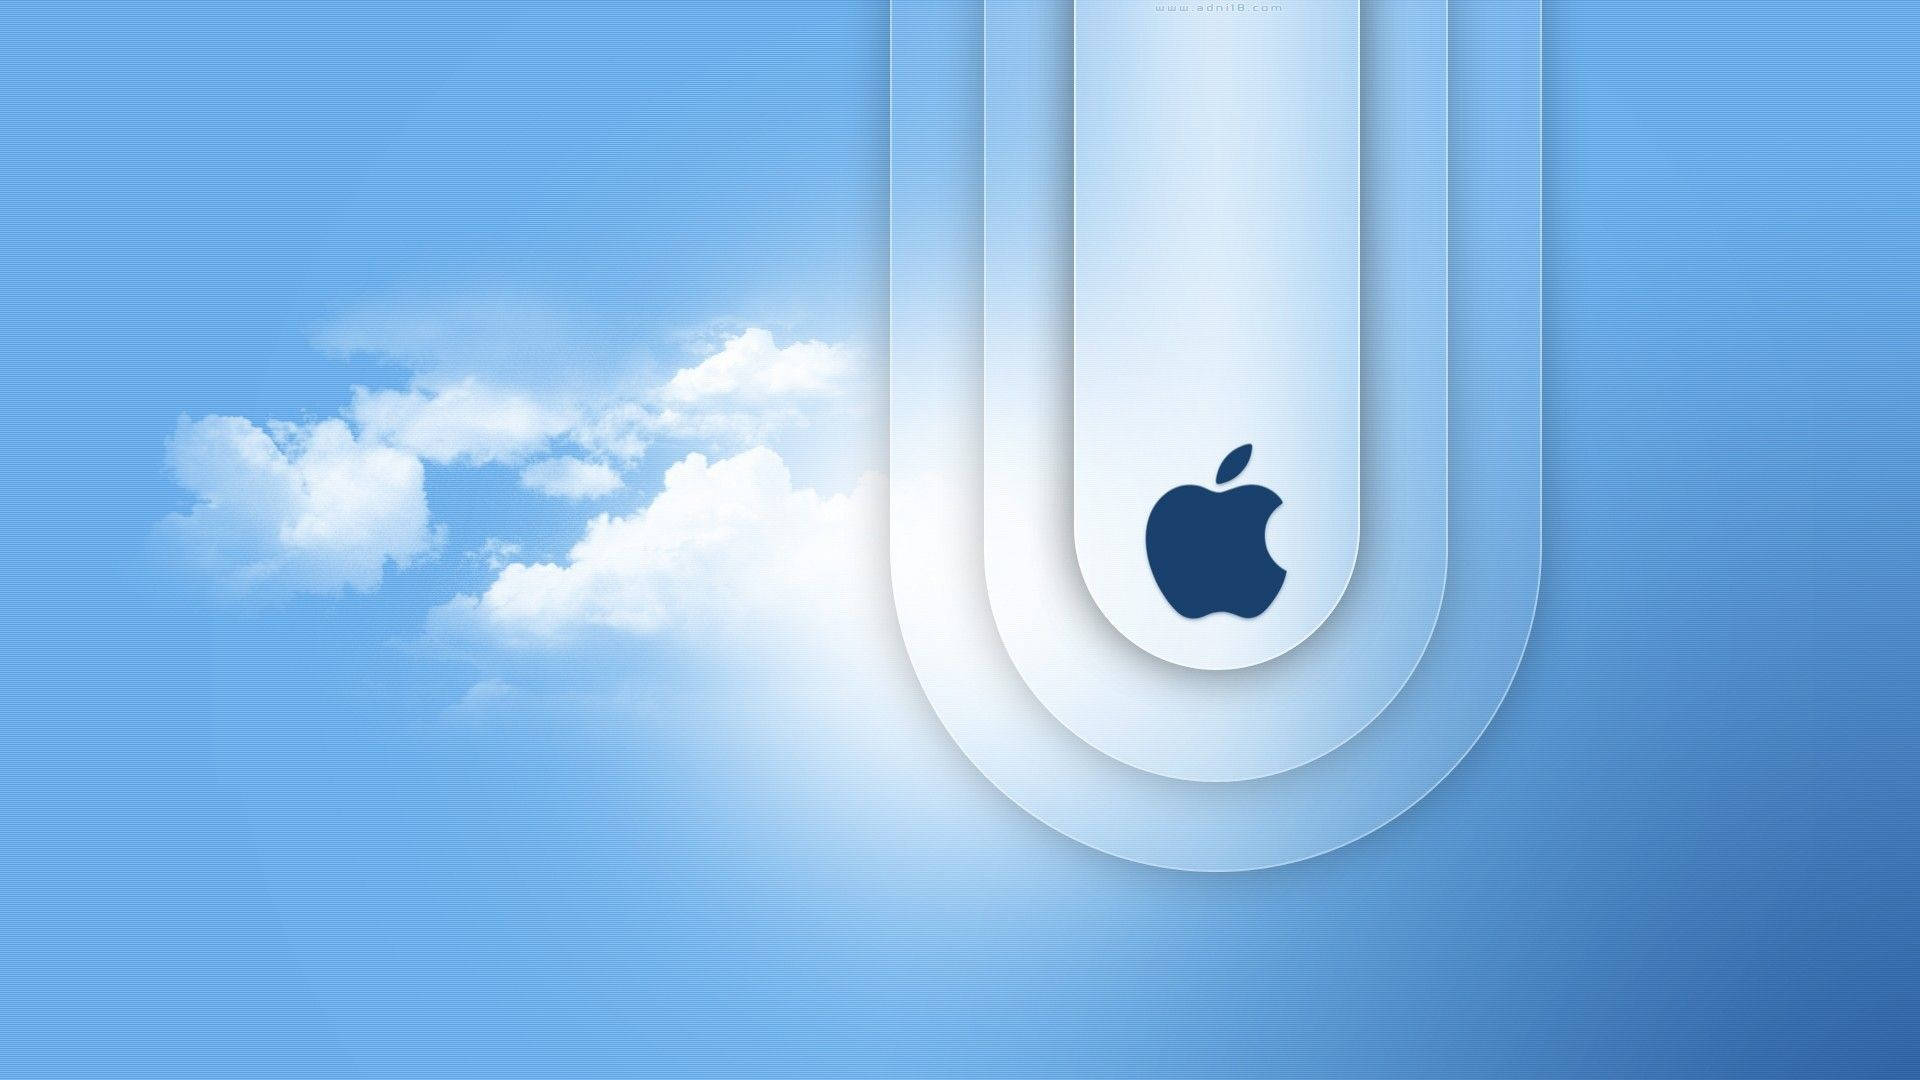 Macbook Air Logo In Clouds Picture